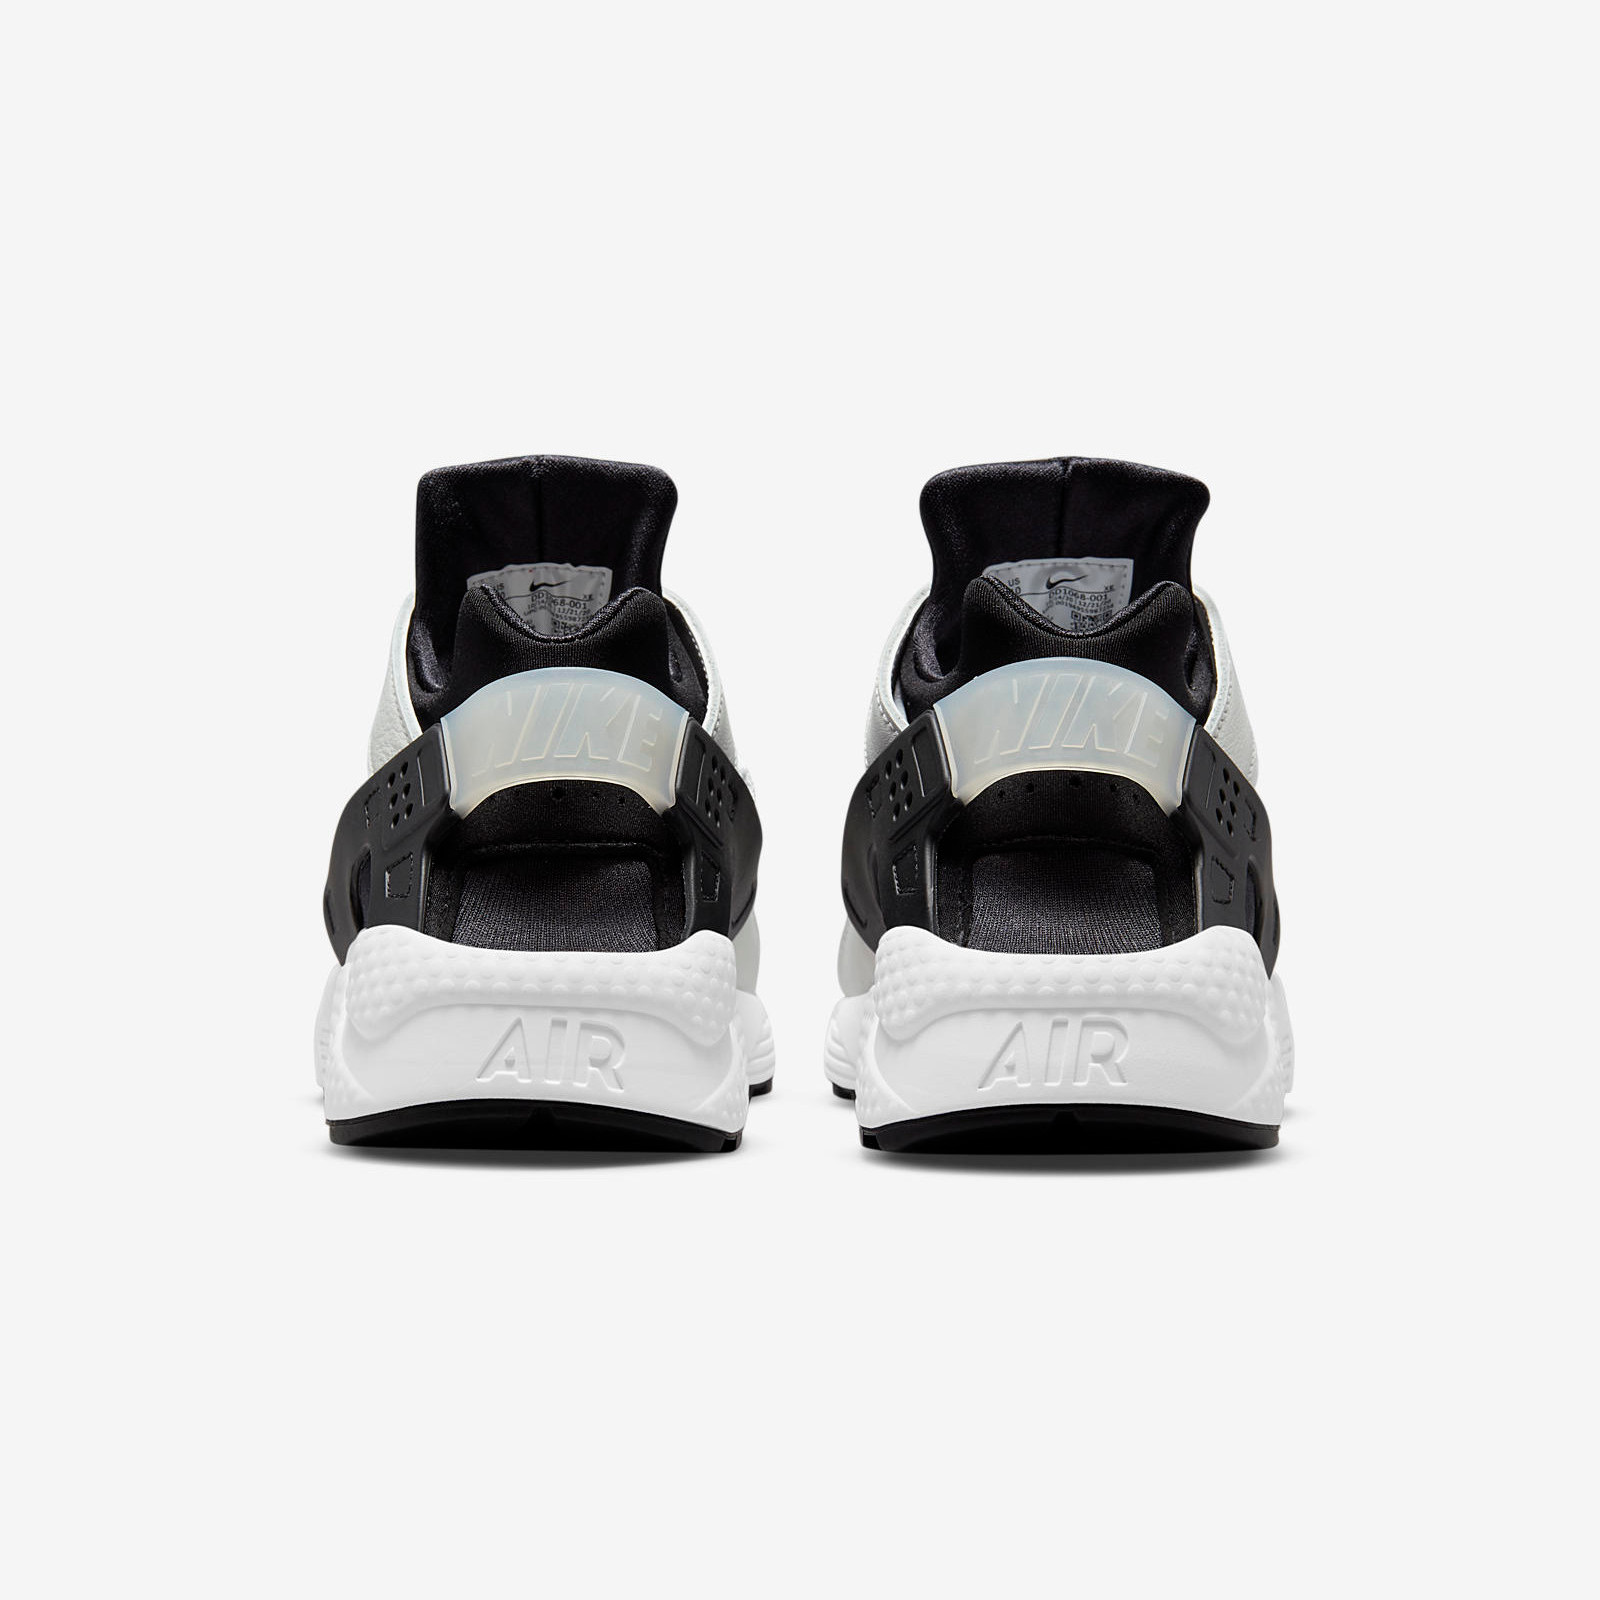 Nike Air Huarache
Black / White